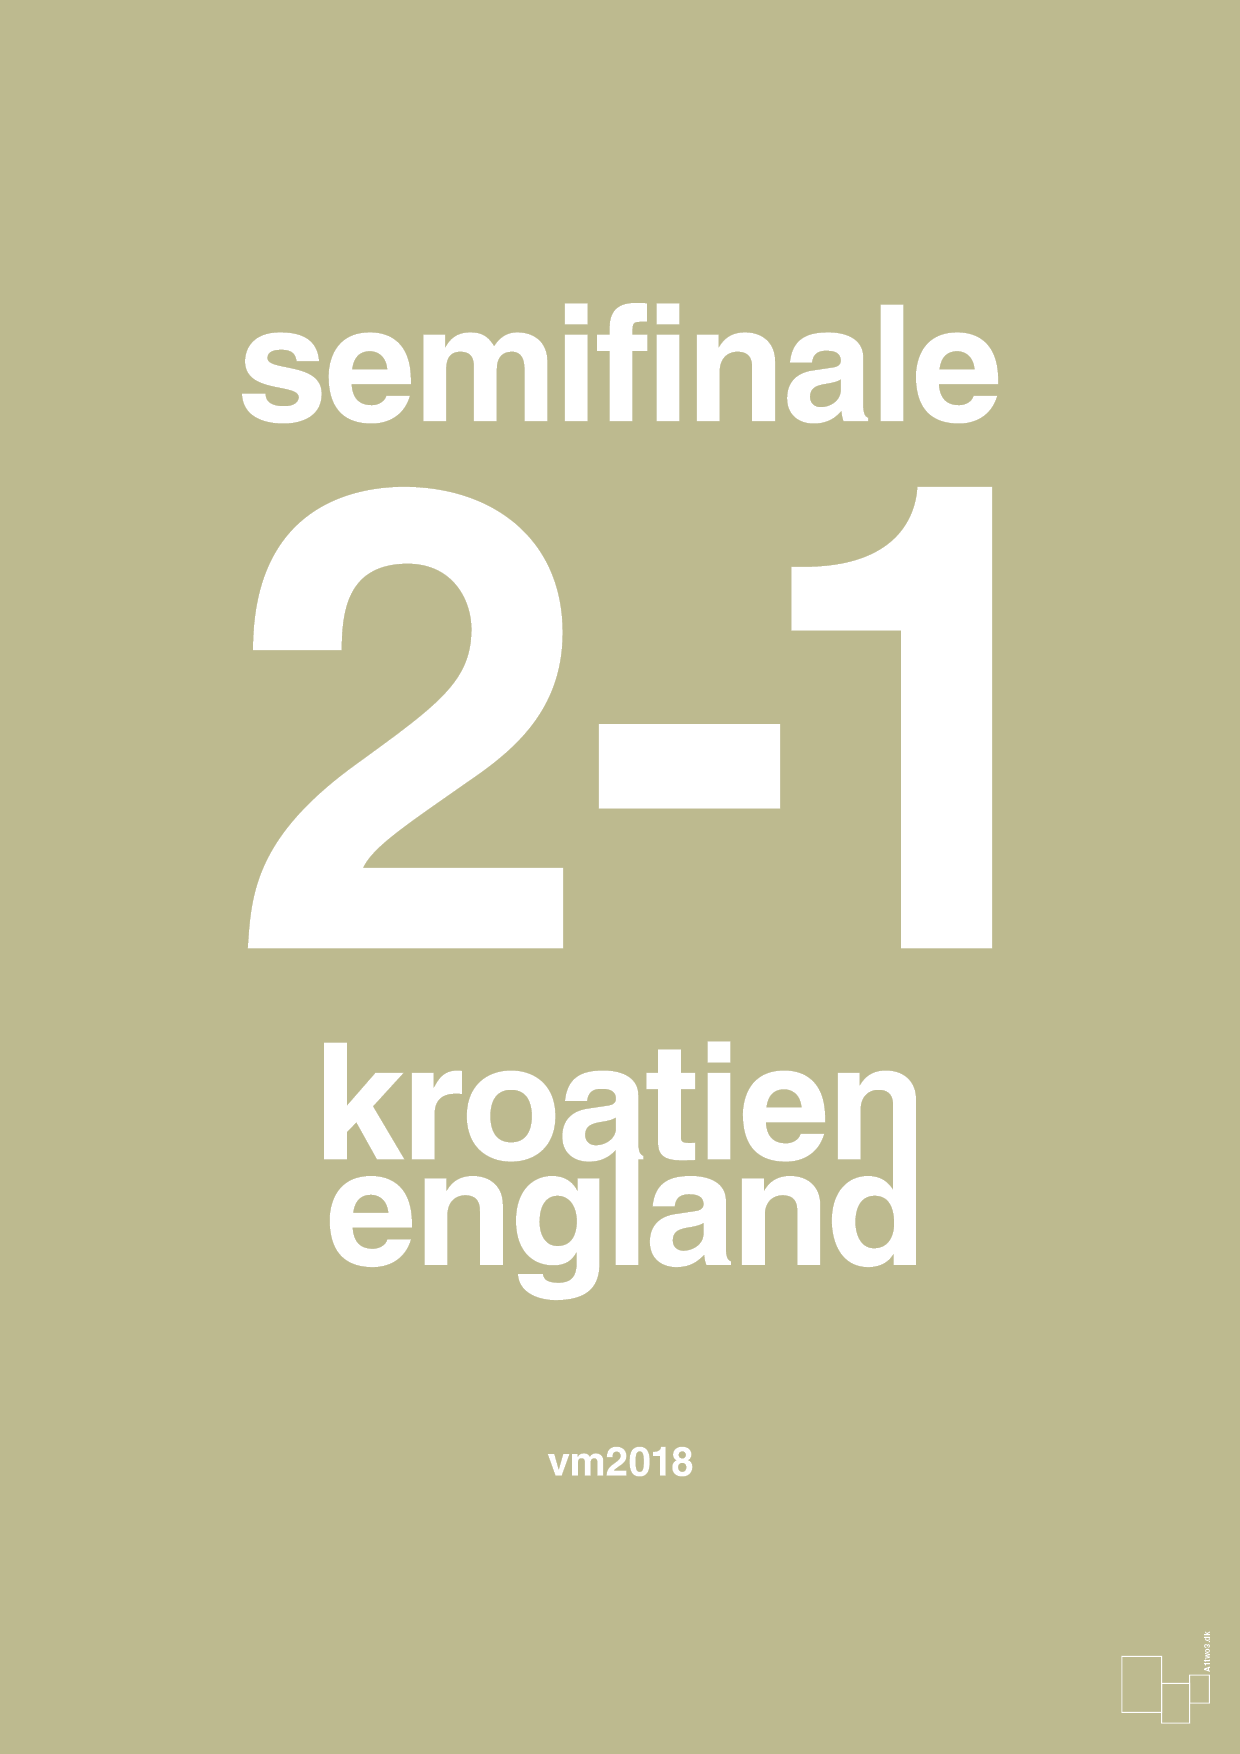 resultat for fodbold vm semifinale A i 2018 - Plakat med Sport & Fritid i Back to Nature